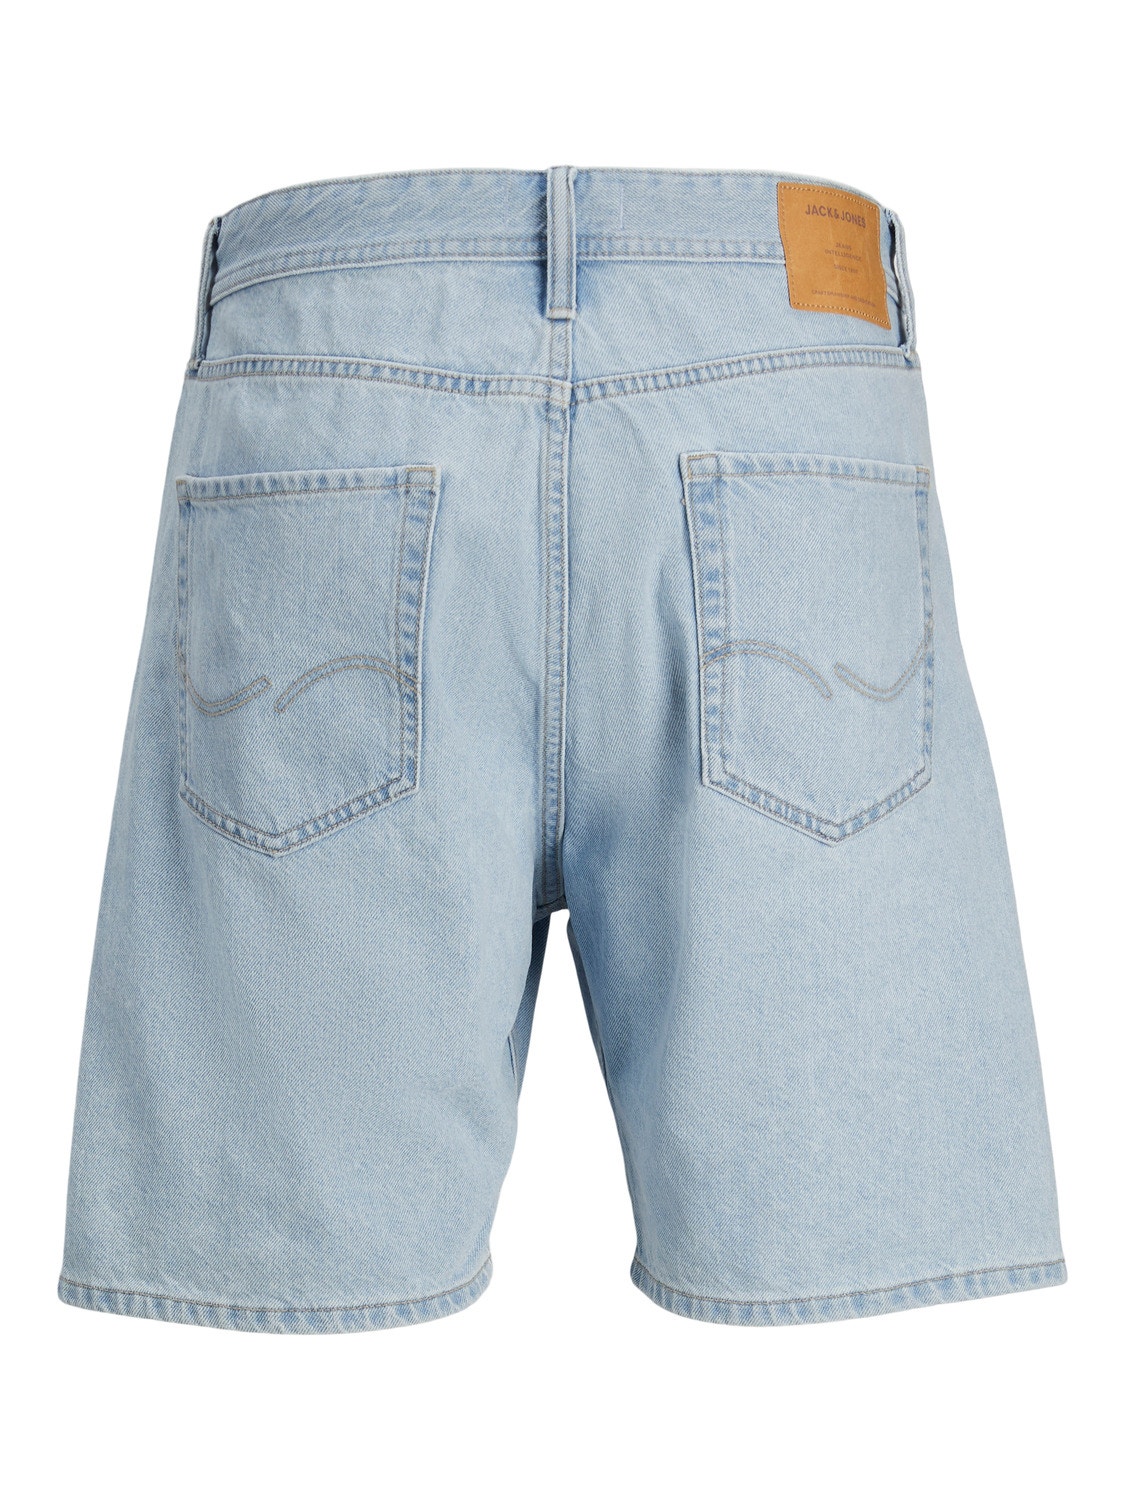 Jack & Jones Plus Size Loose Fit Casual Shorts -Blue Denim - 12257456